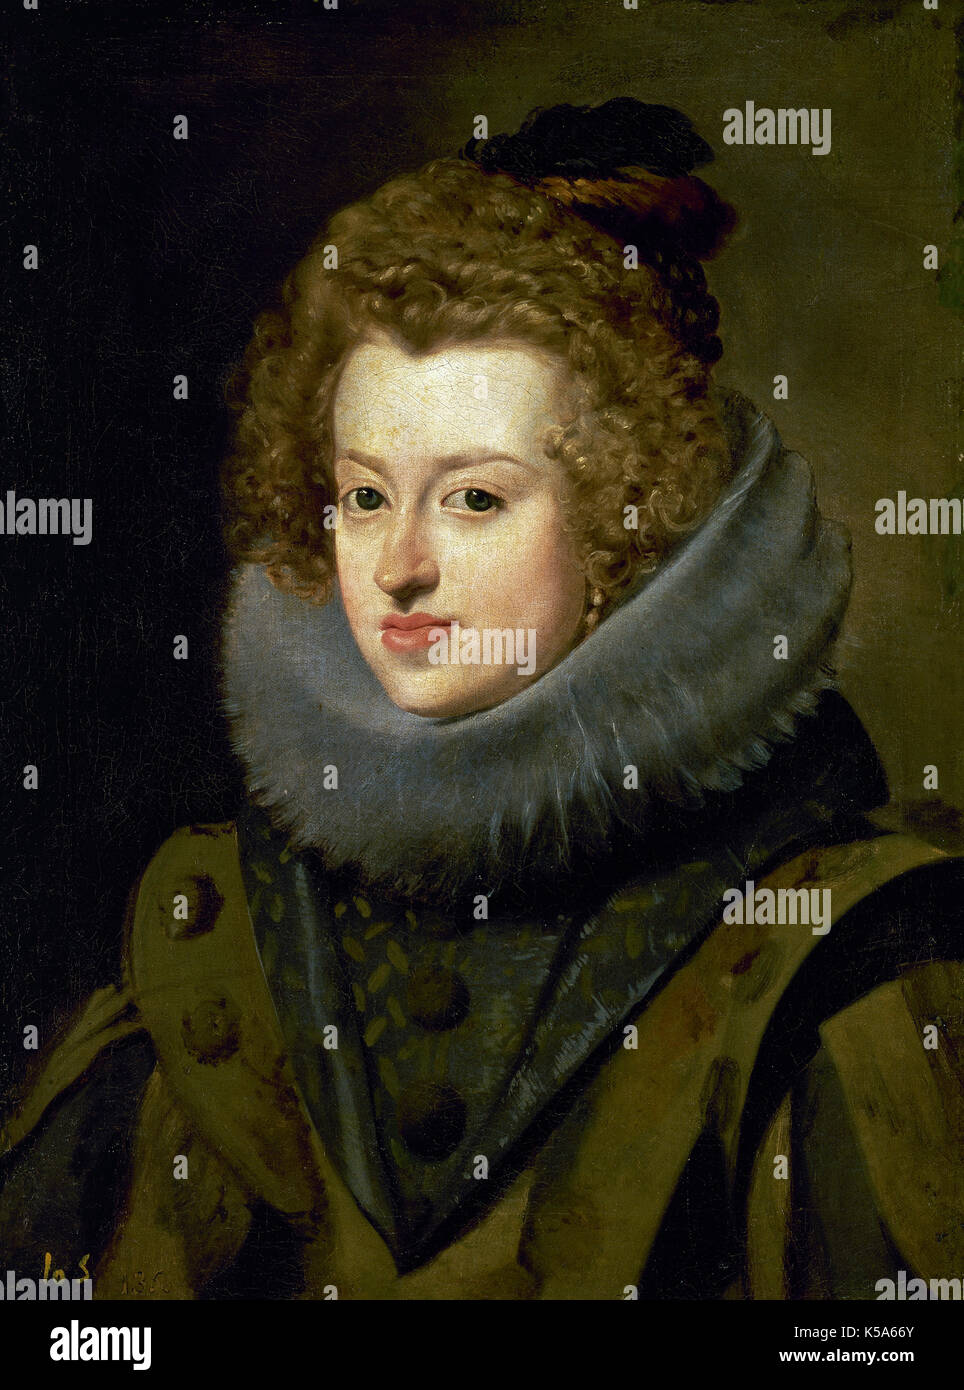 Maria Anna de l'Espagne 1606-1646). Reine de Hongrie. Fille de Philippe III d'Espagne. Elle est morte d'être l'Impératrice. Maria d'Autriche, reine de Hongrie. Portrait par Diego Velazquez, autour de 1630. Huile sur toile. Musée du Prado, Madrid, Espagne. Banque D'Images